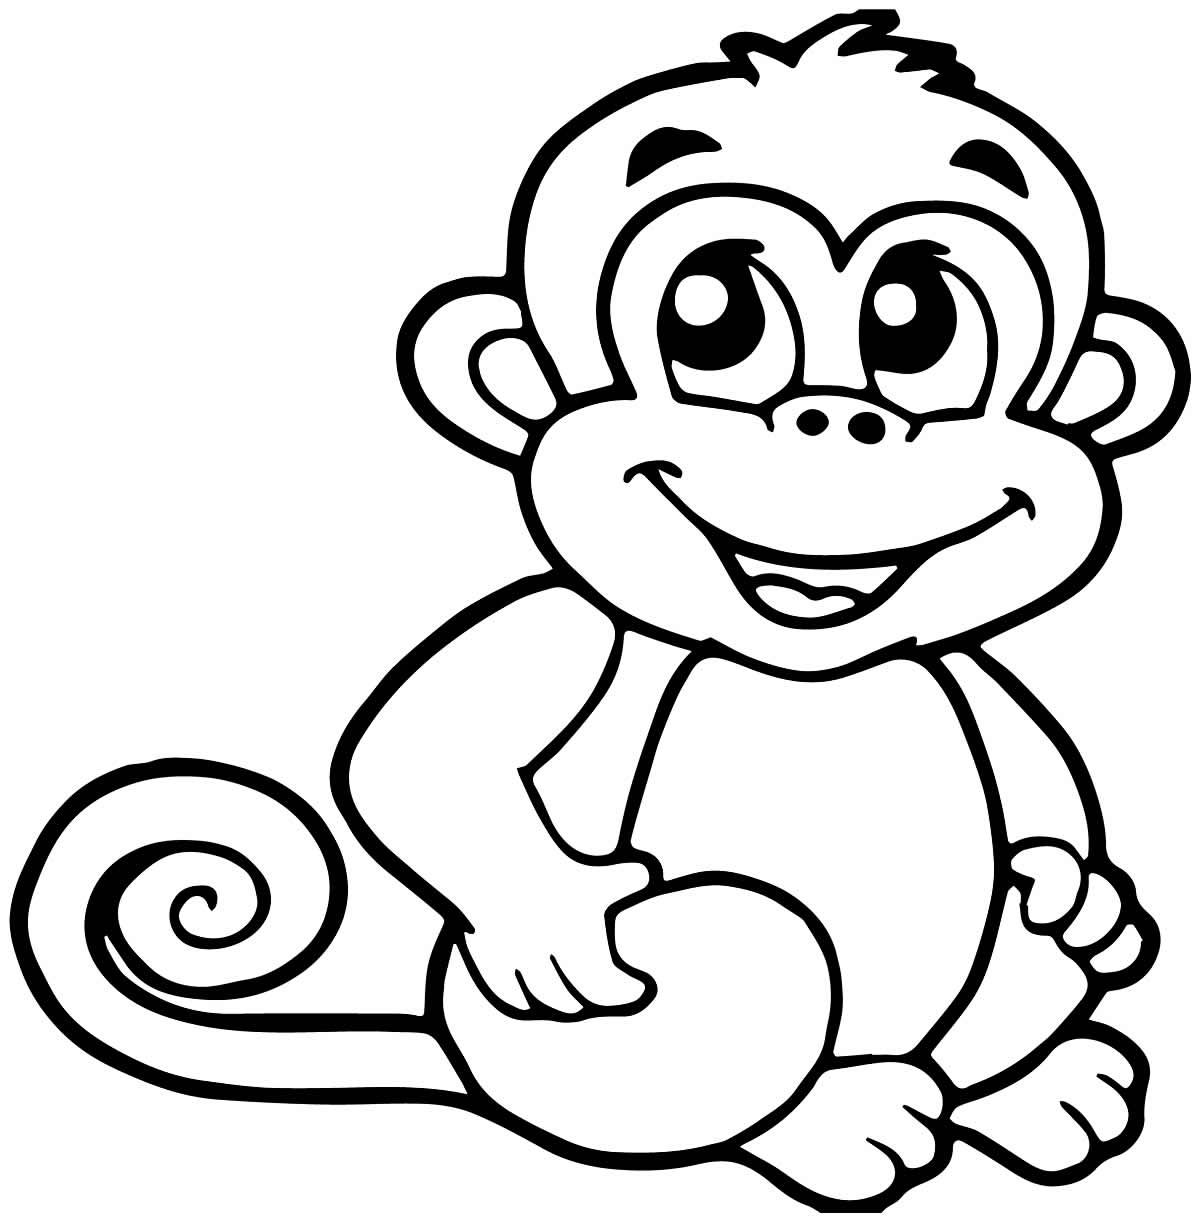 Imagem de macaco para colorir